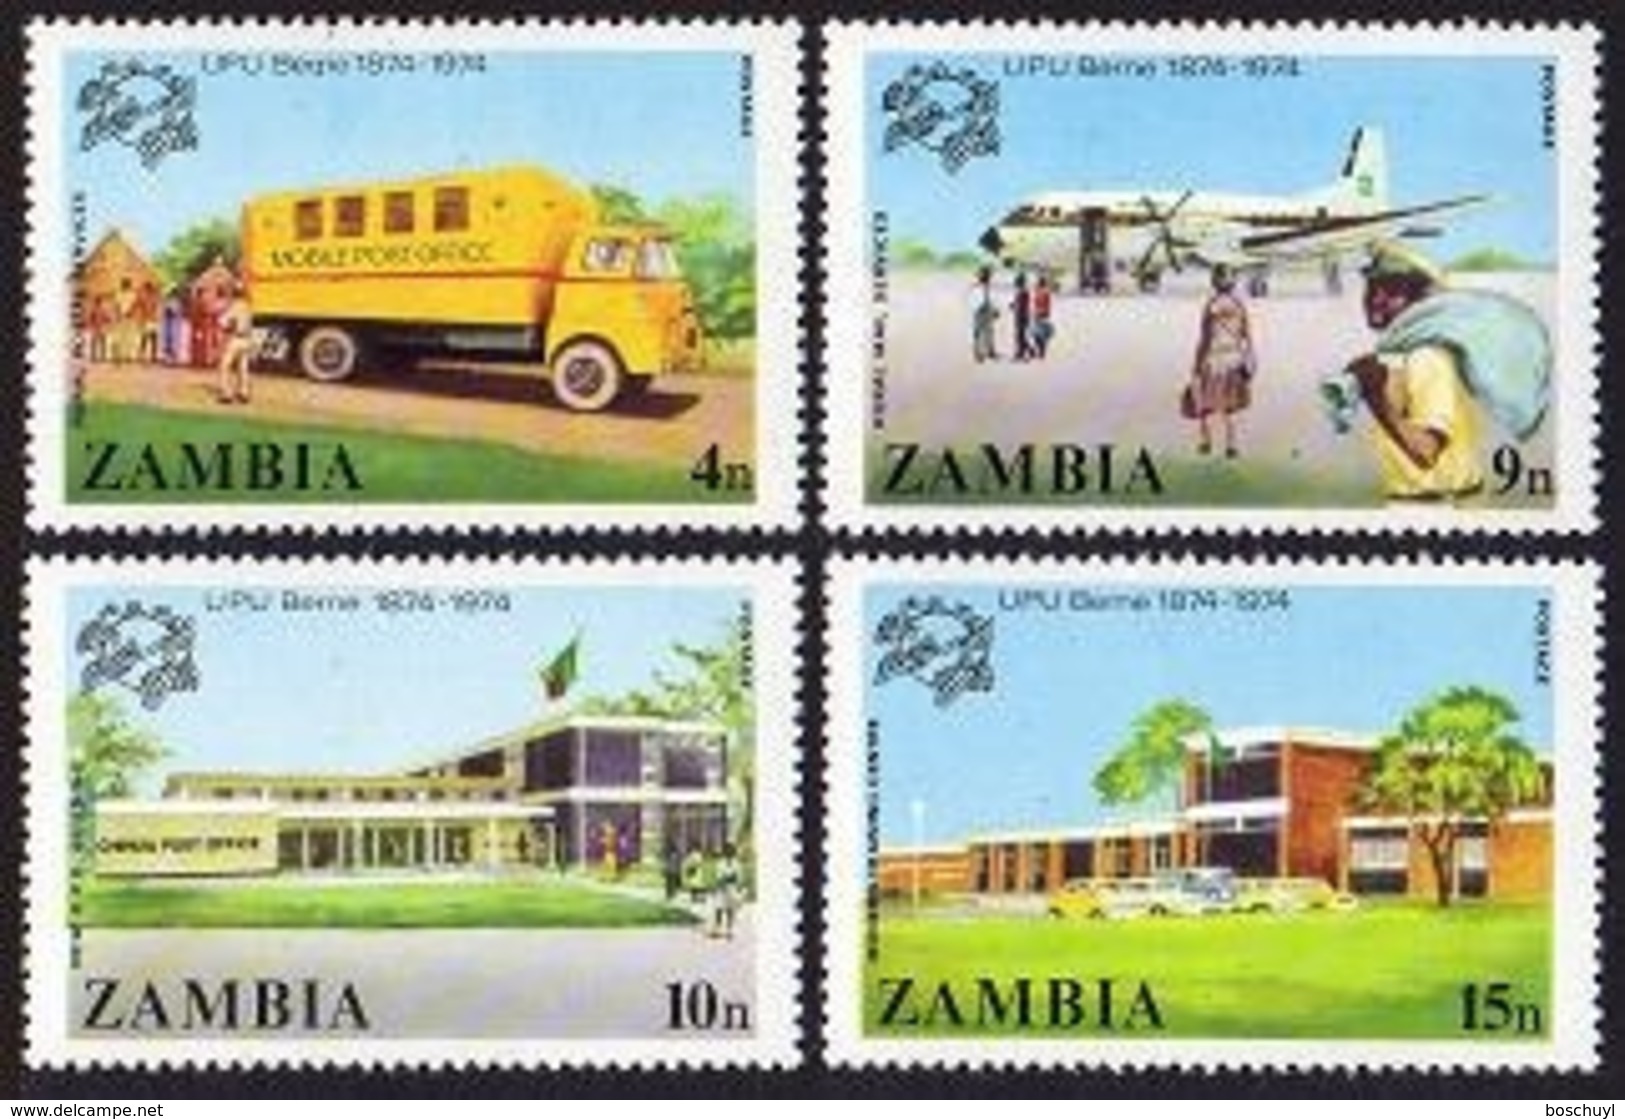 Zambia, 1974, UPU Centenary, Universal Postal Union, United Nations, MNH, Michel 133-136 - Zambia (1965-...)